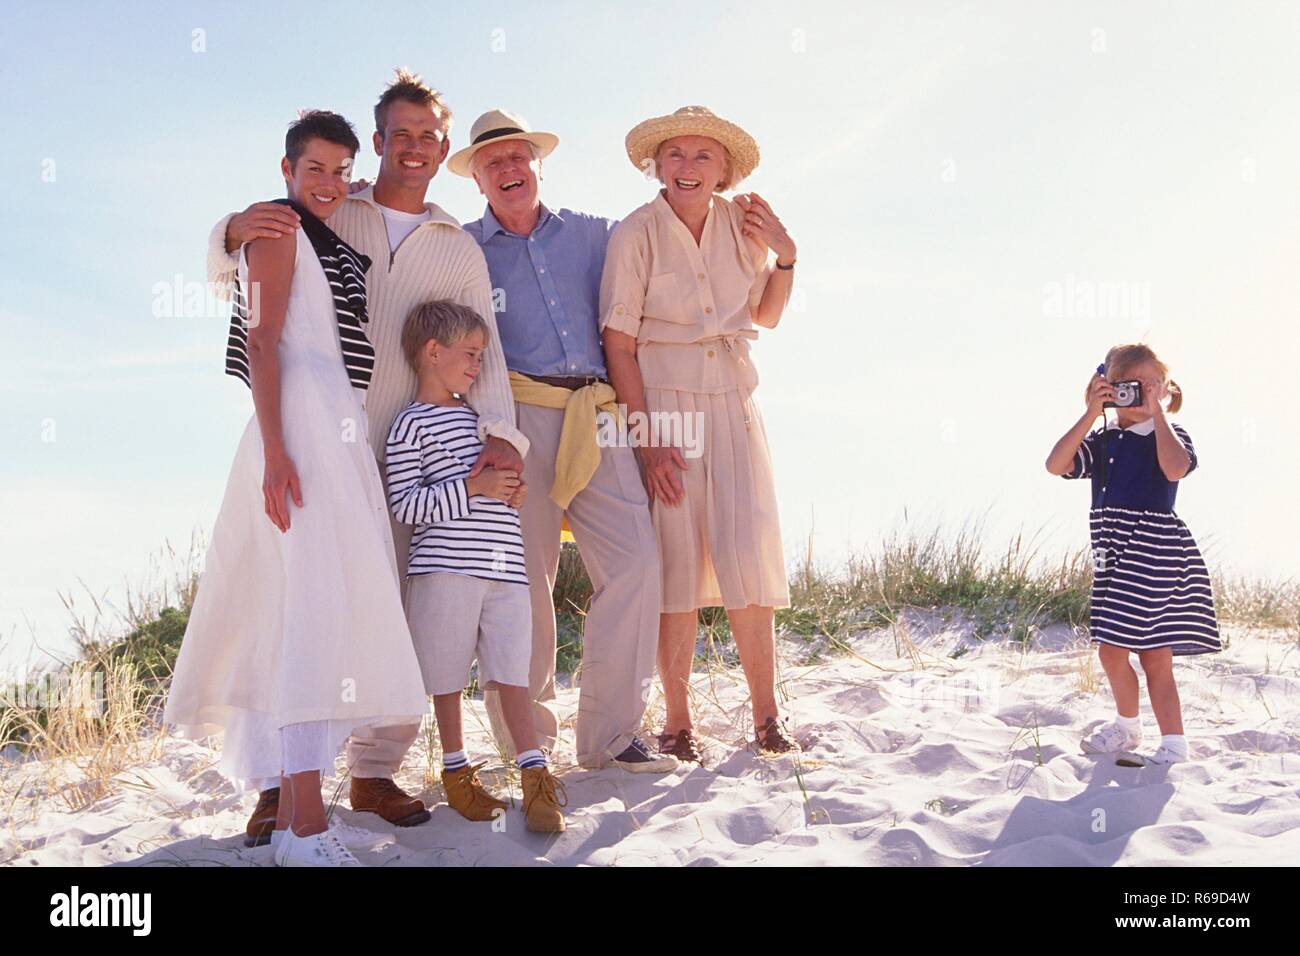 Strandszene, bionde Maedchen macht am Strand ein Gruppenfoto von ihrer Familie mit den Eltern, Grosseltern und ihrem Bruder Foto Stock